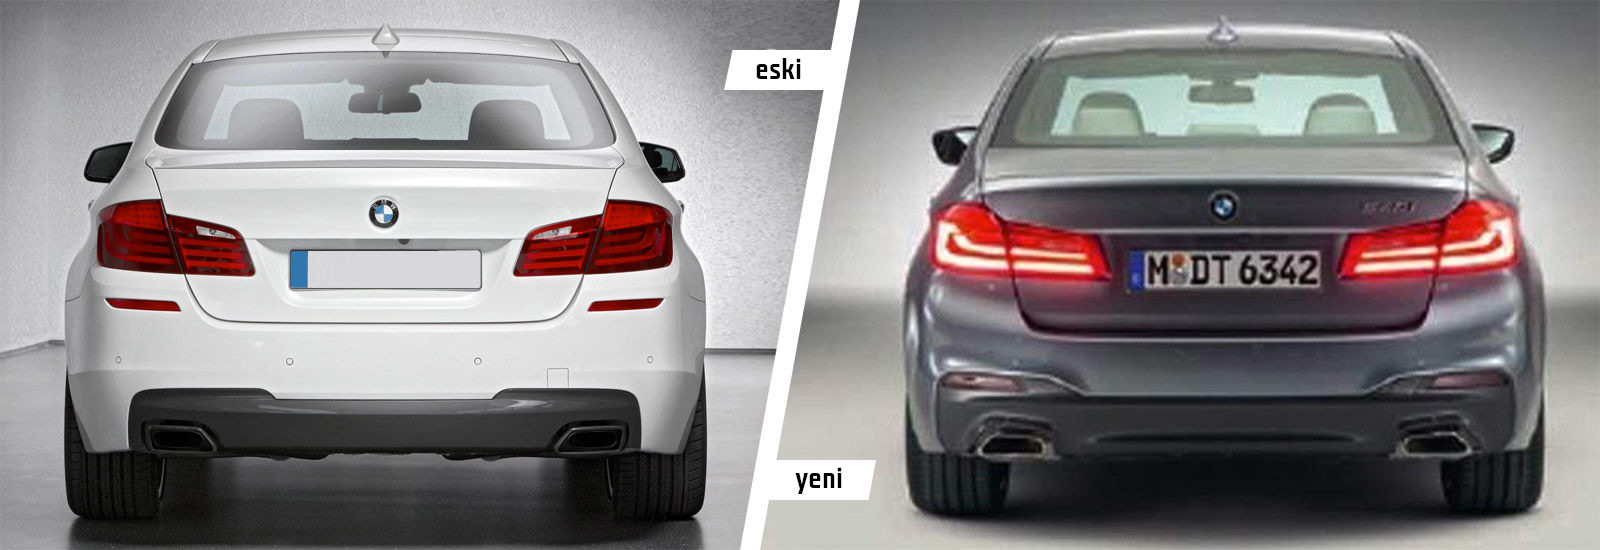 BMW 5 serisi resmen tanıtıldı: işte çok özel görüntüler ve yenilikler